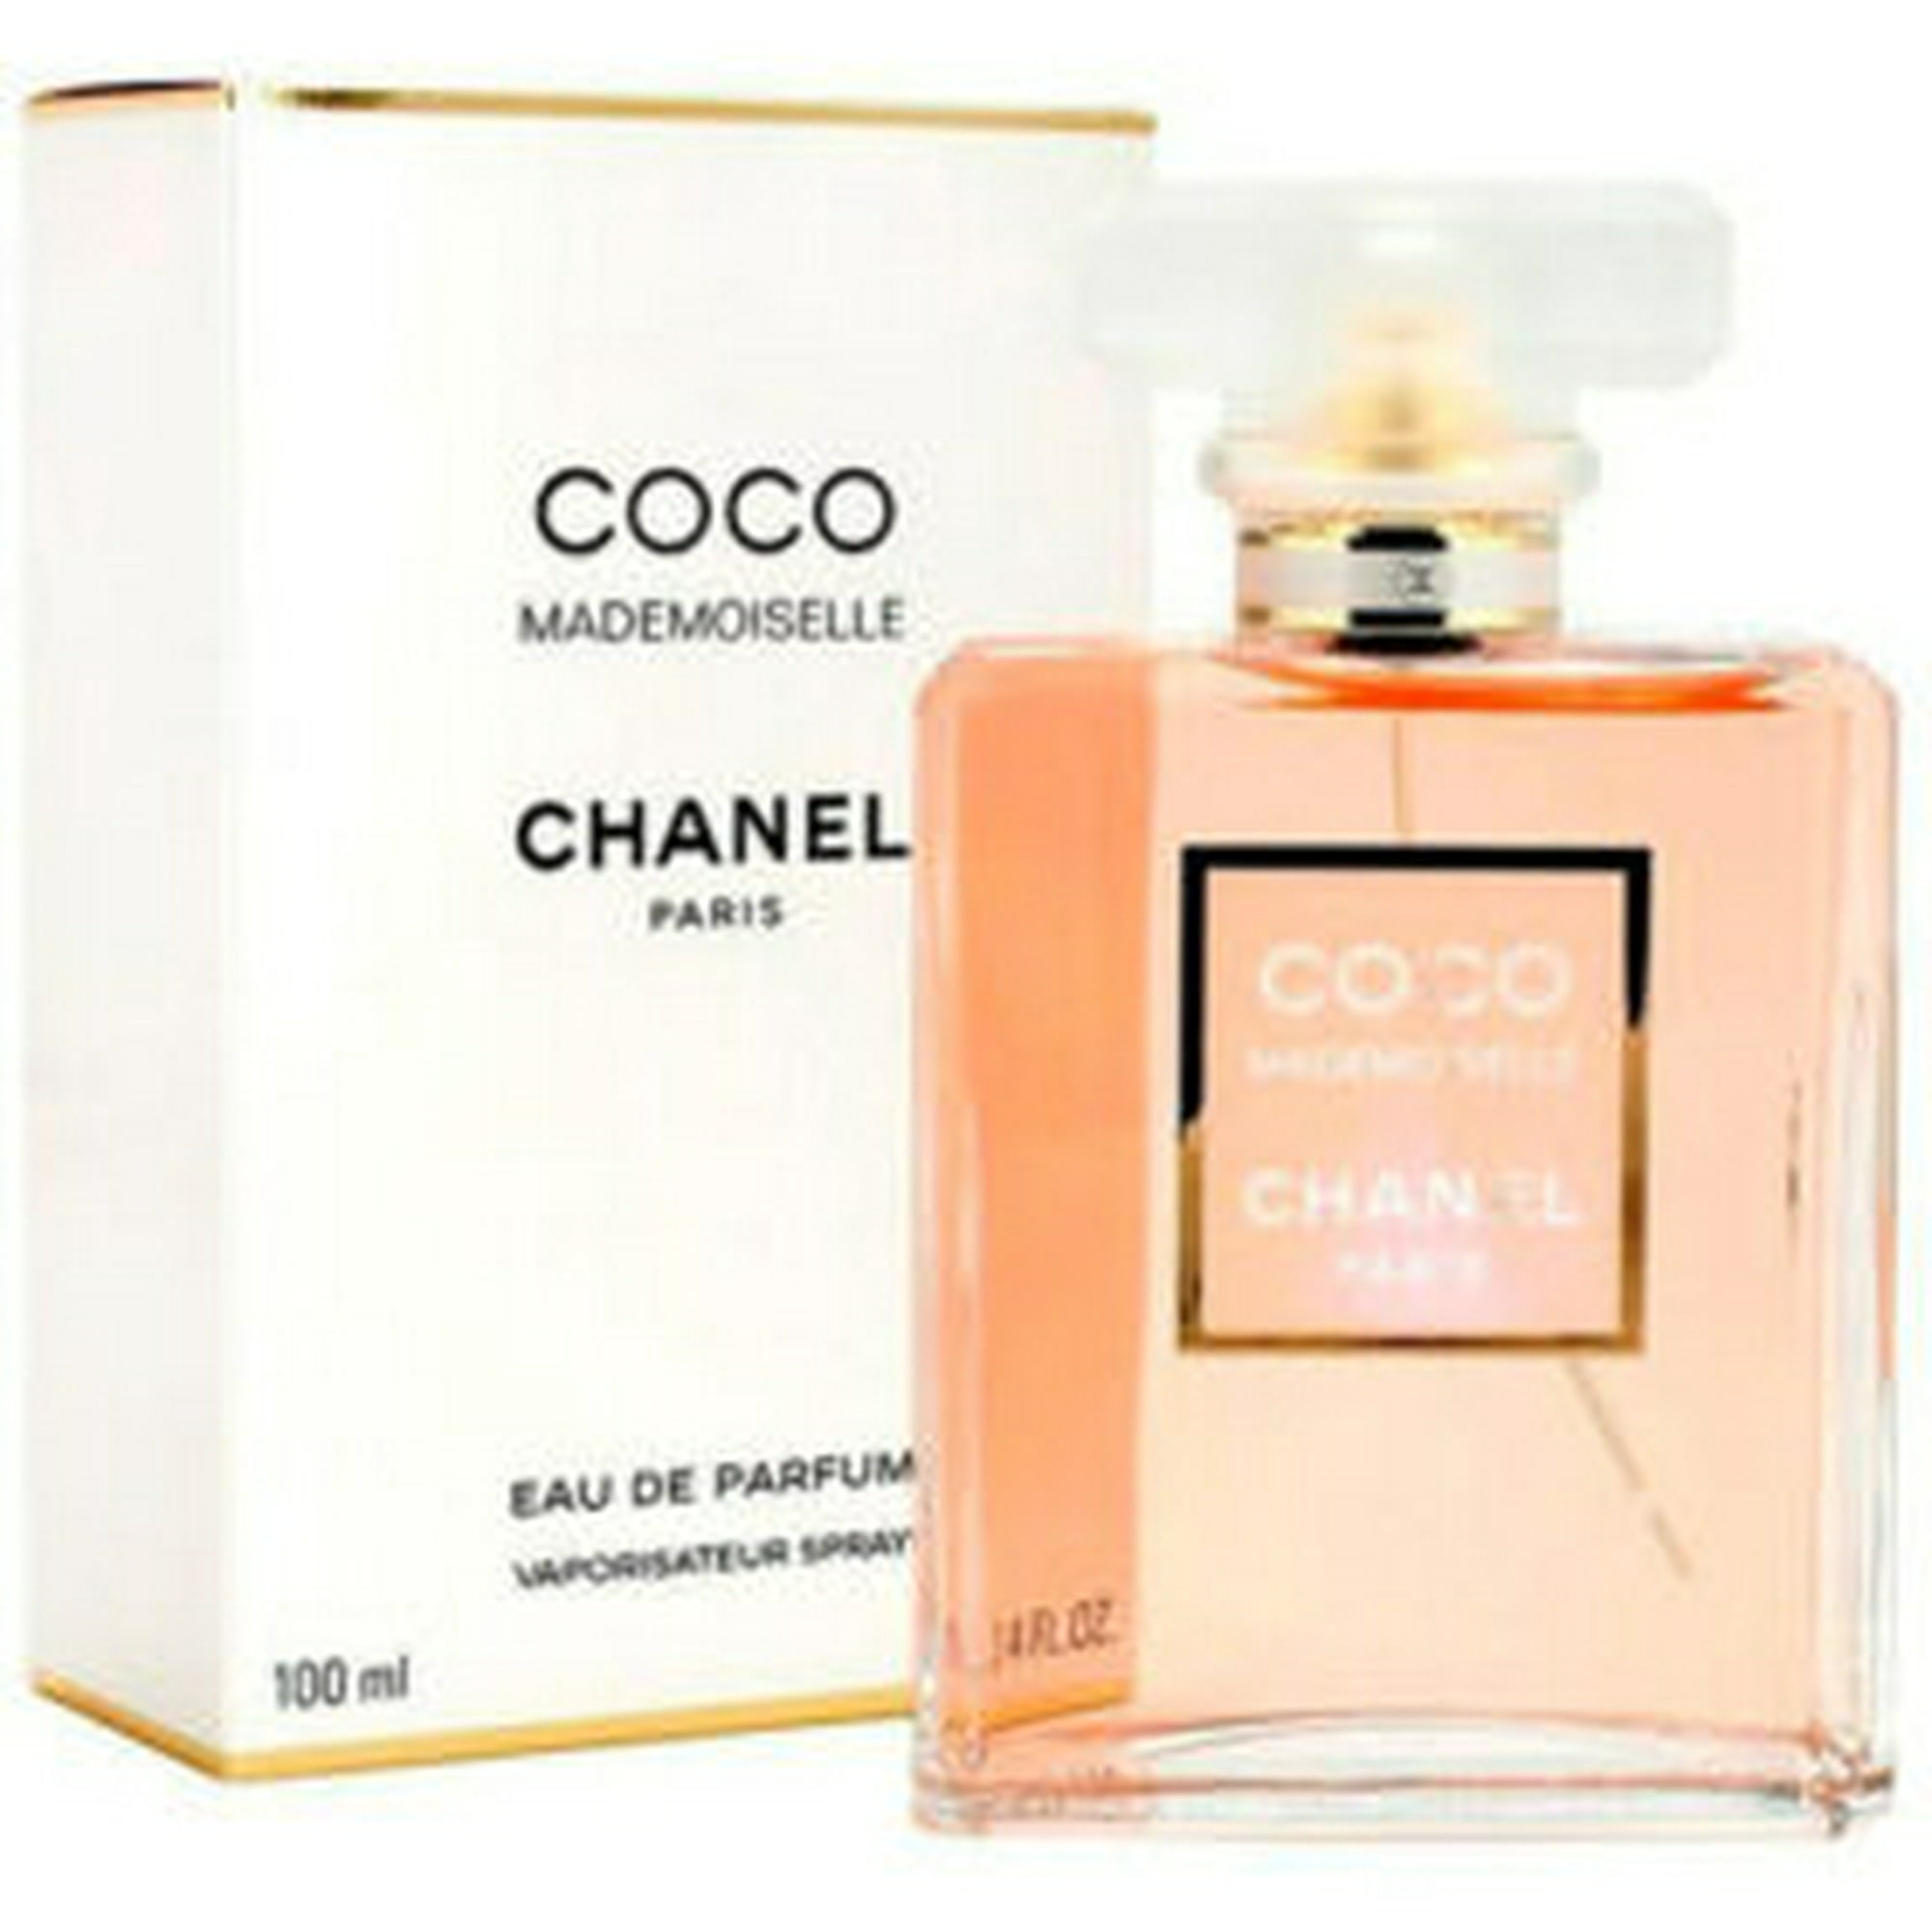 Coco Mademoiselle, el perfume más sexy del momento -y ésta es la razón